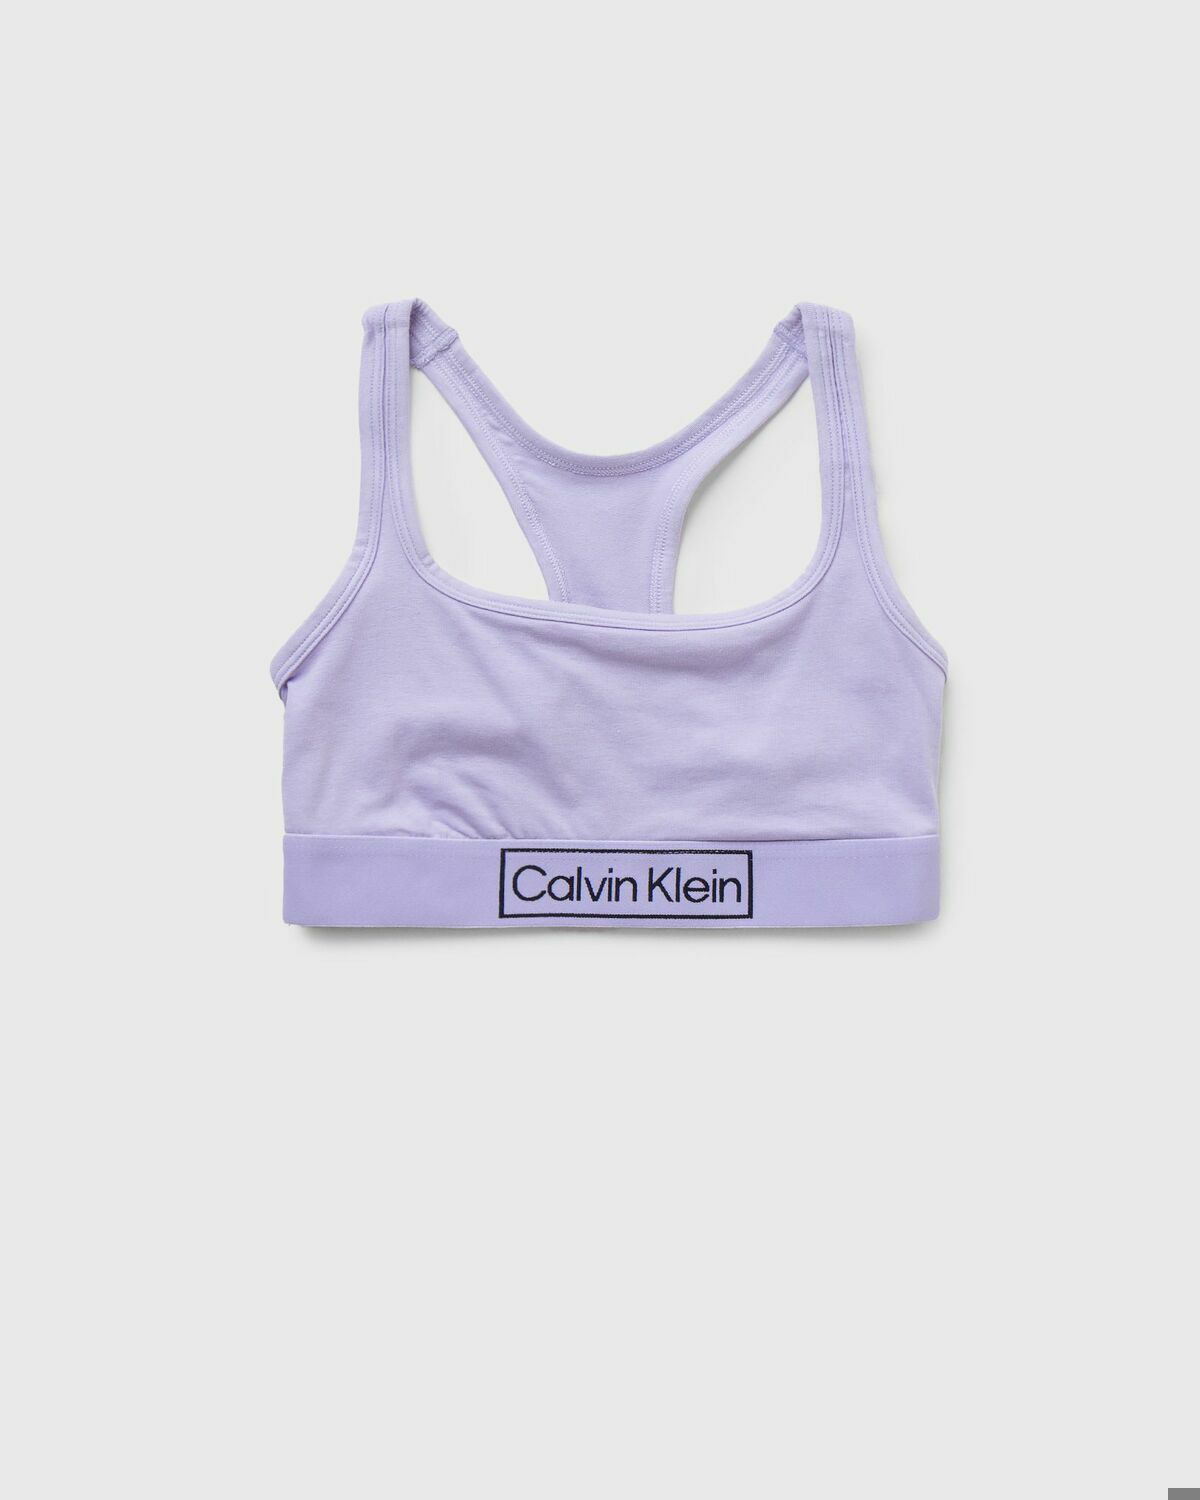 Women's underwear Calvin Klein, Colour Pink